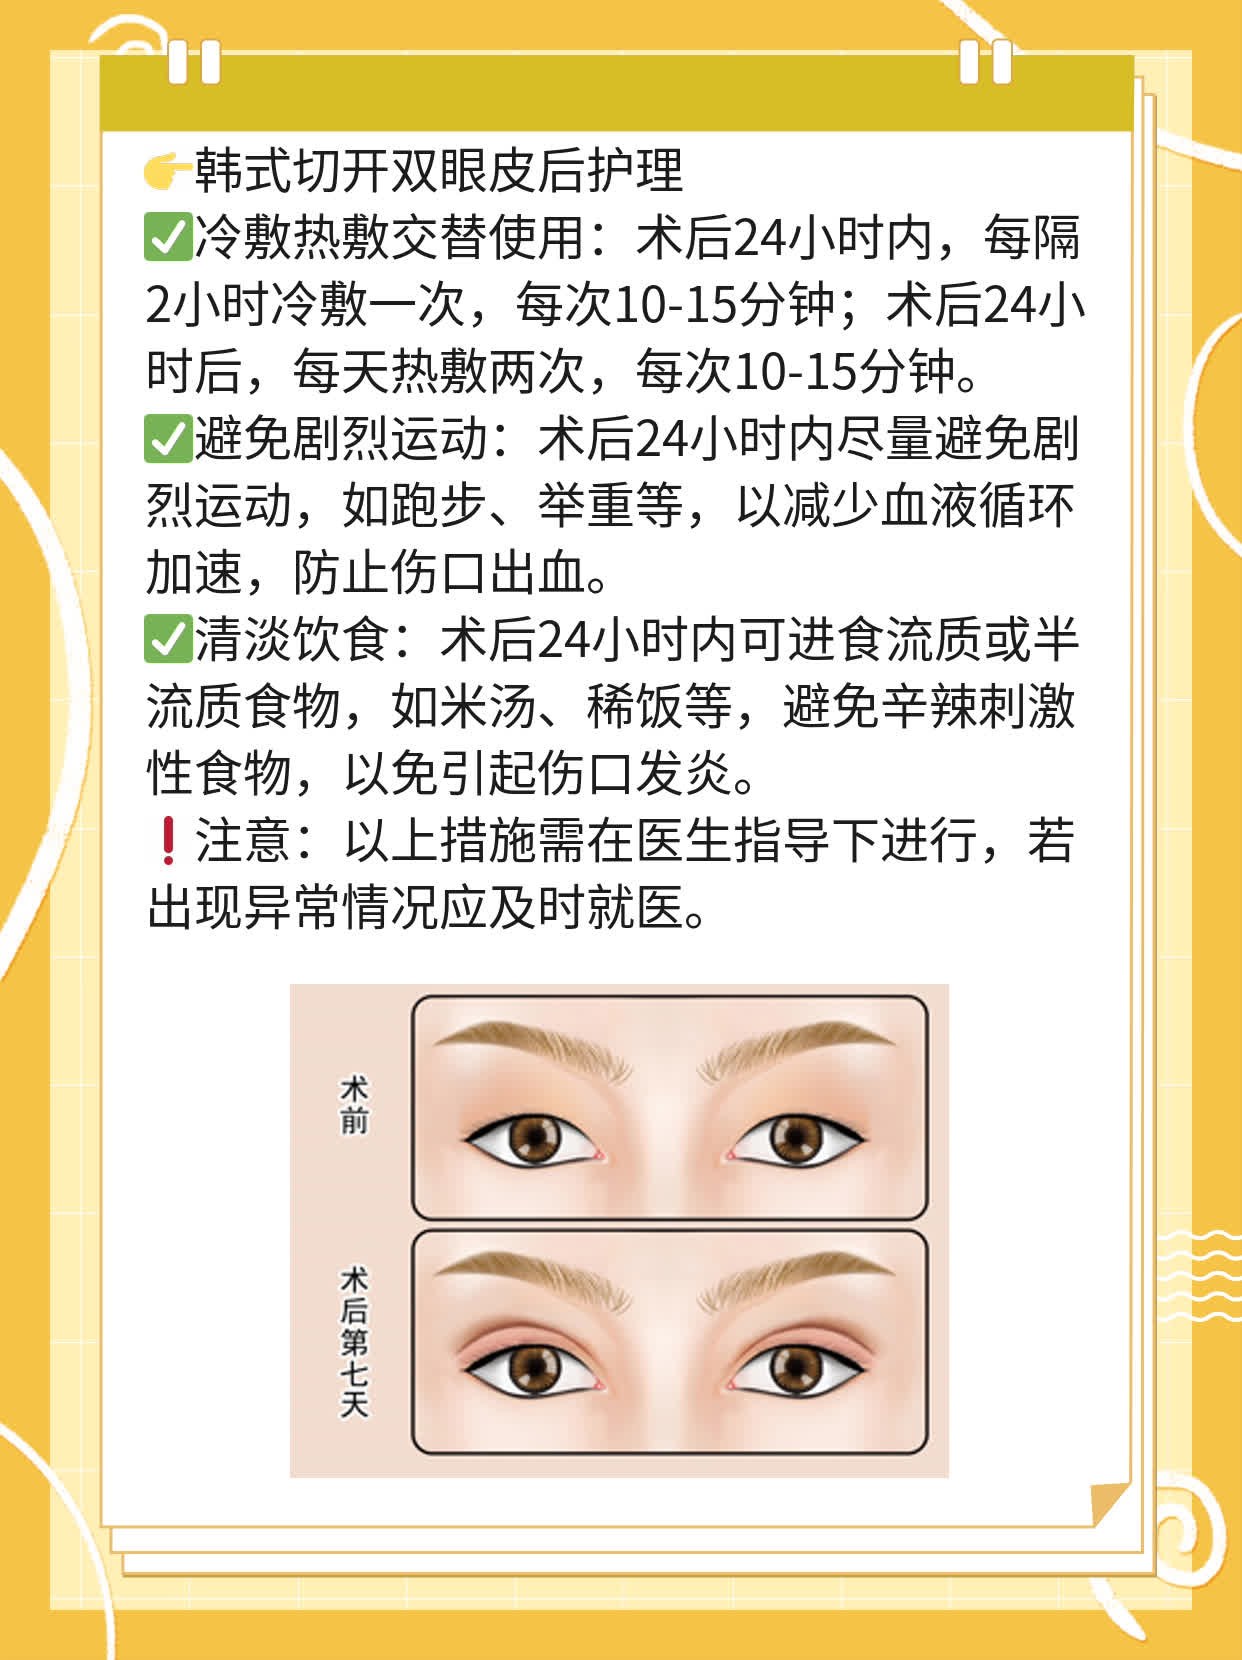 「双眼皮手术」 韩式切开 vs 全切，你知道的区别吗？